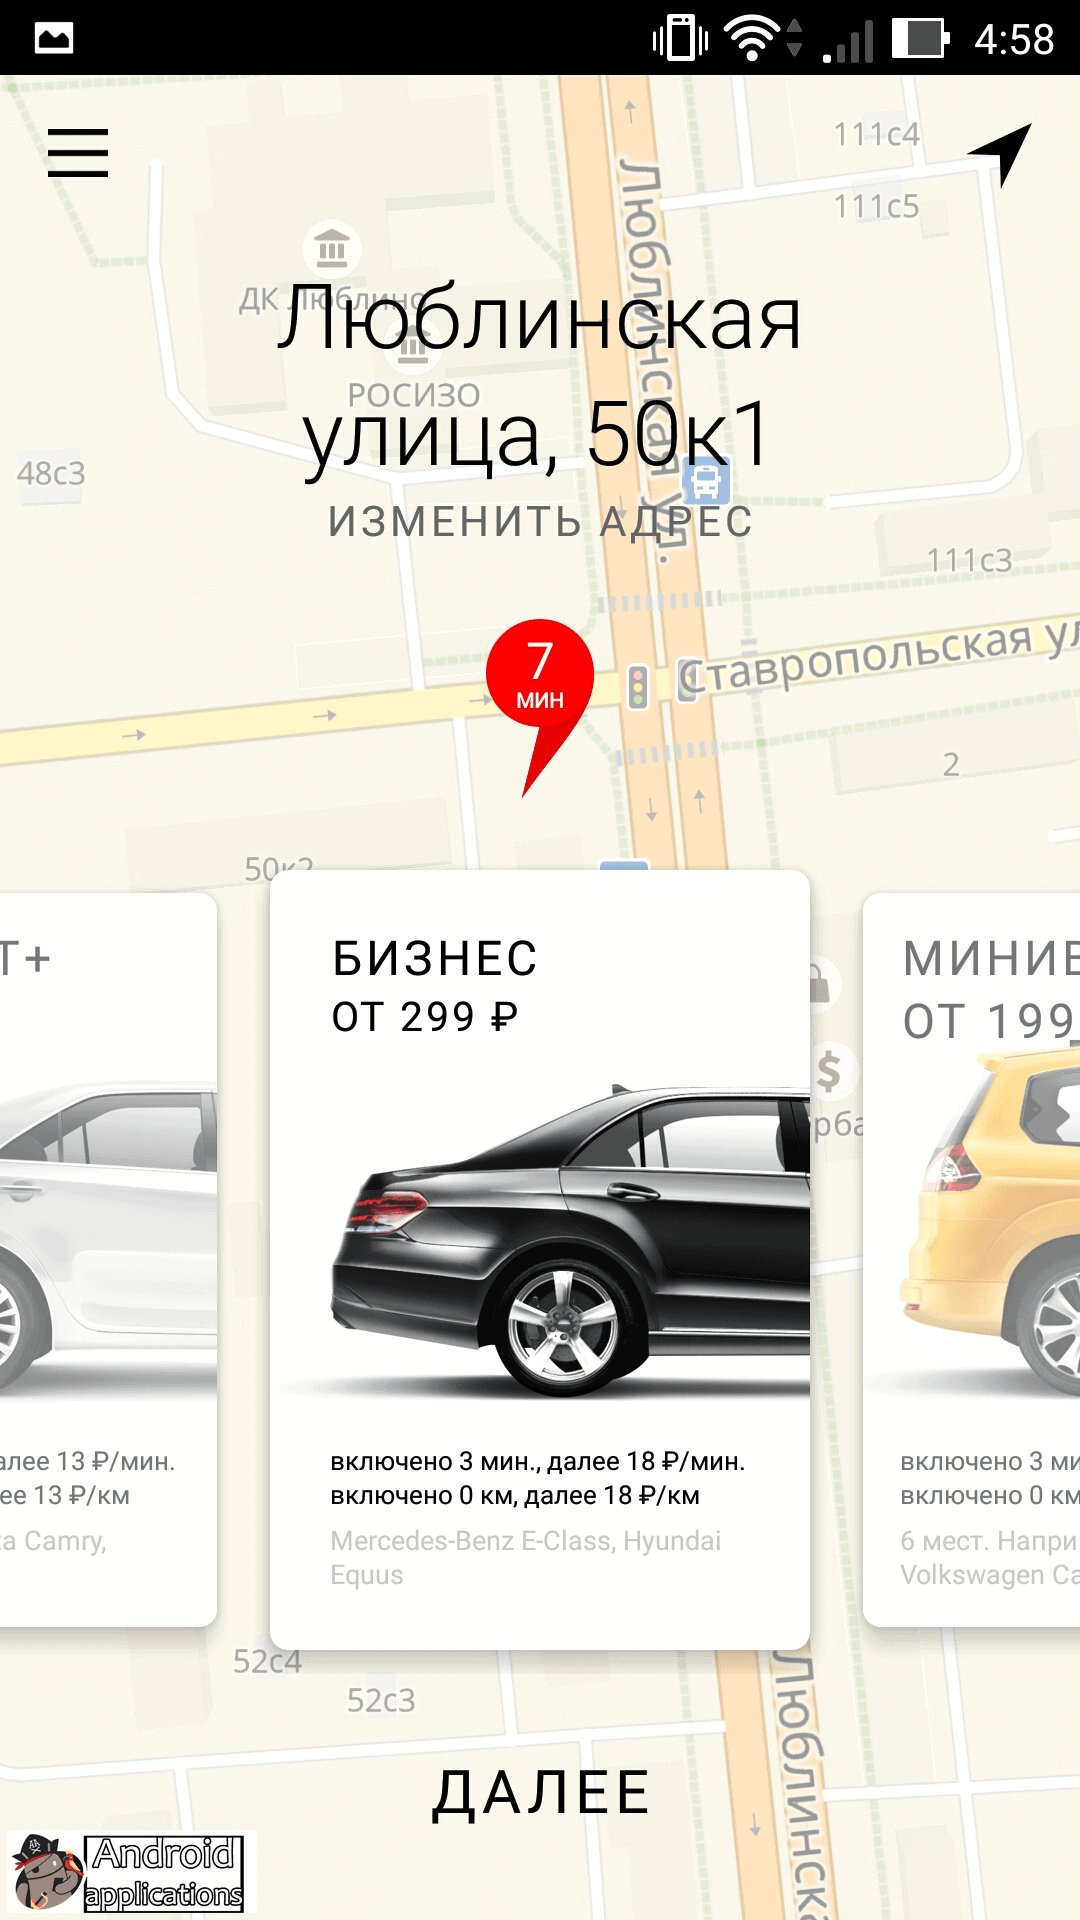 Скриншот #1 из программы Яндекс Go: такси и доставка